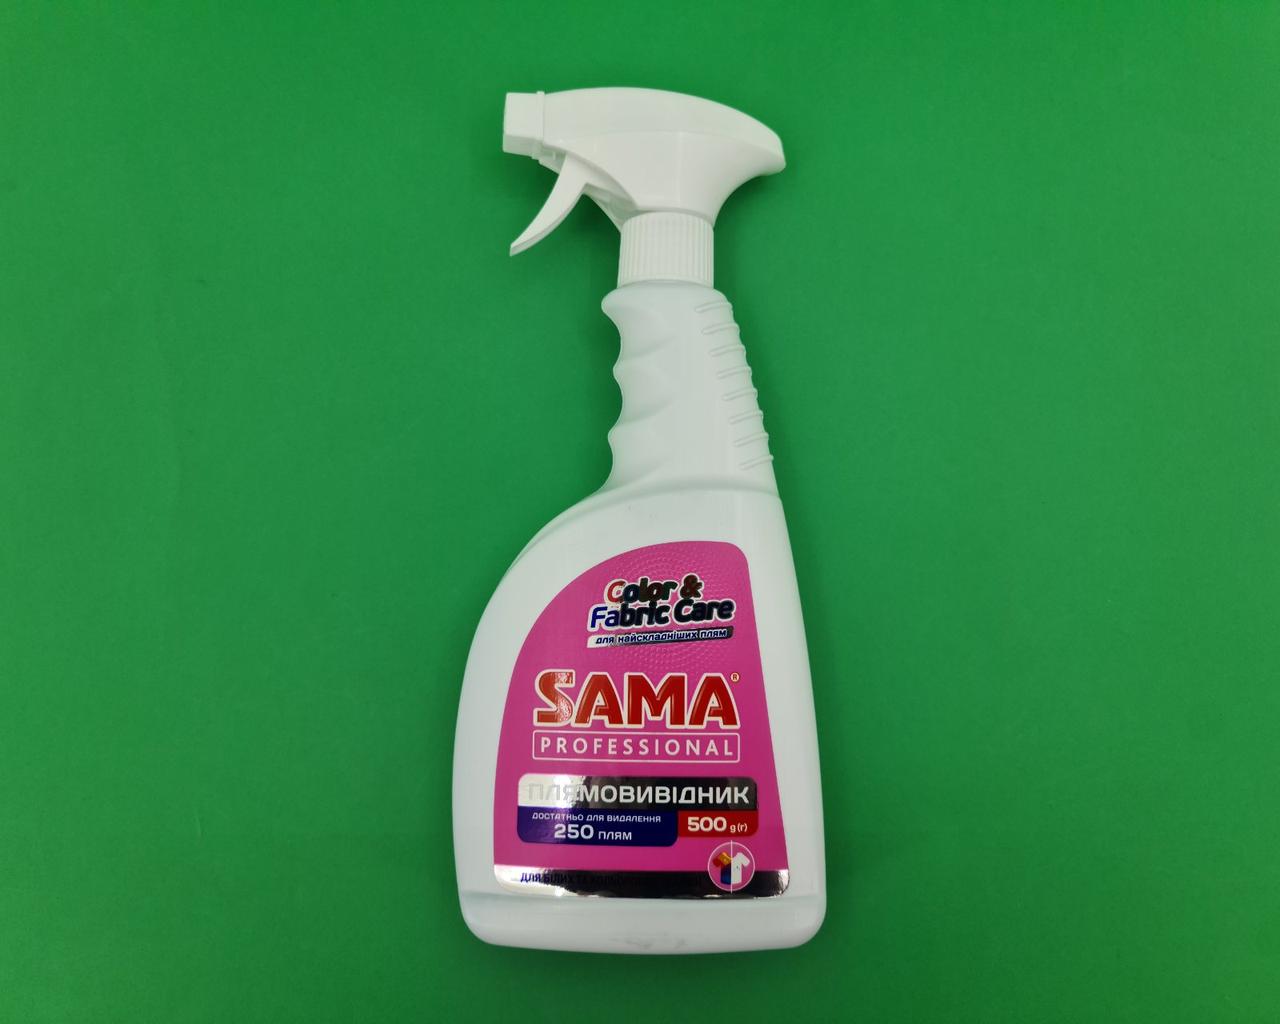 Плямовивідник SAMA 500гр Professional для кольорових та білих тканин (1 шт)